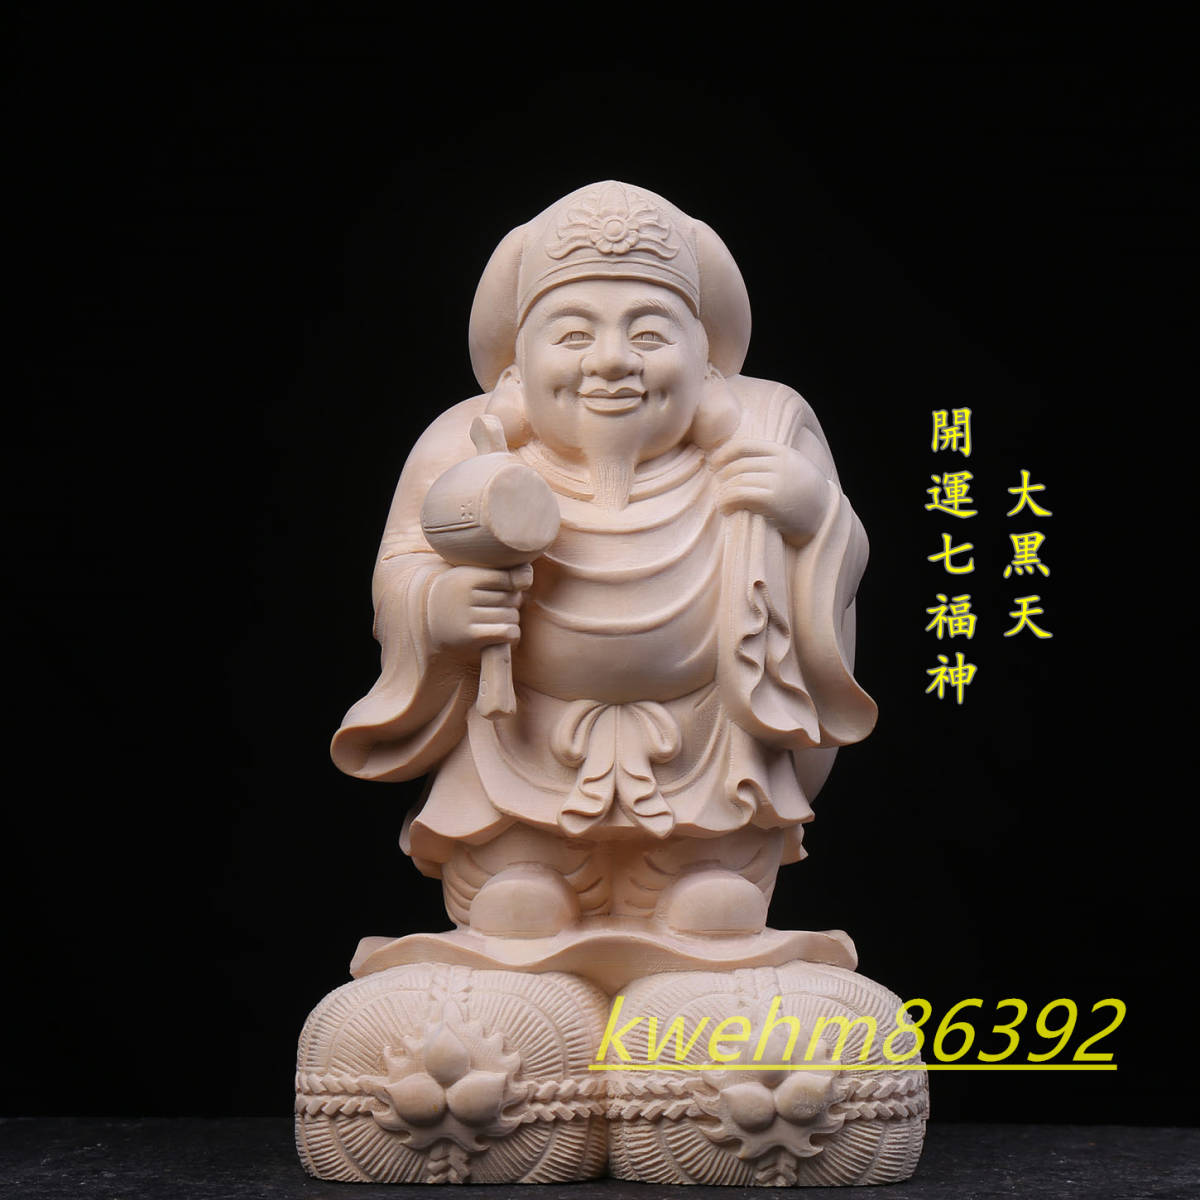 木彫り 仏像 七福神 大黒天 立像 財神 彫刻 一刀彫 天然の木 檜材 仏教工芸品